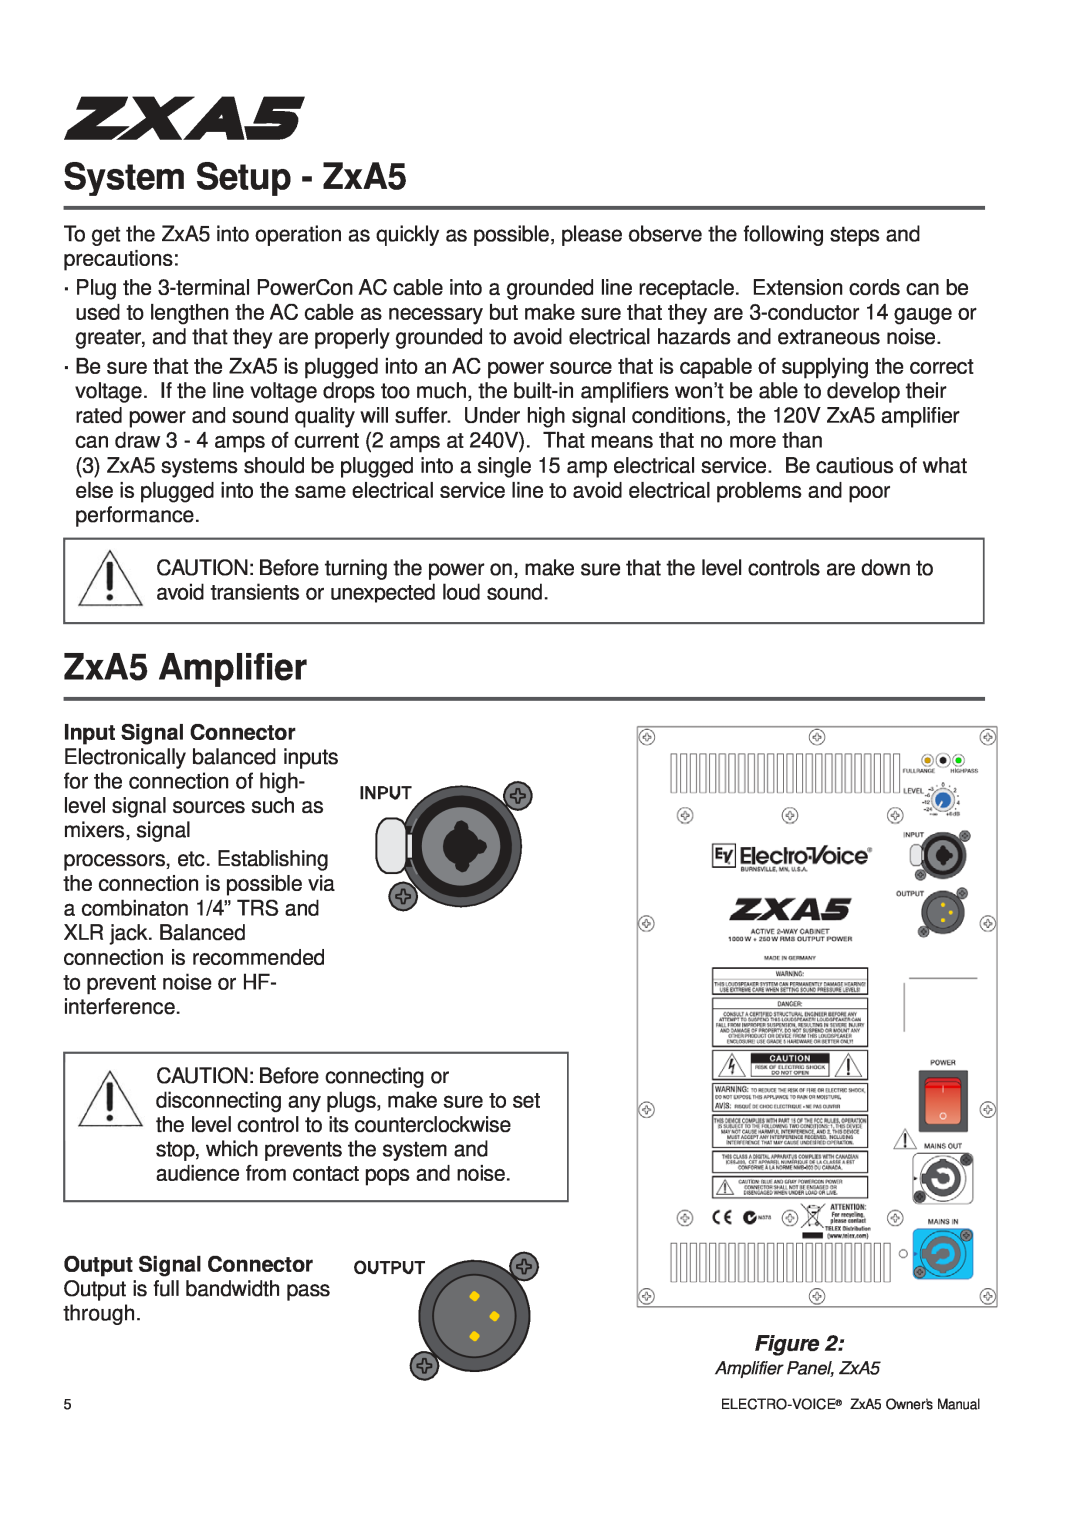 Pentax ZXA5-60, ZXA5-90 owner manual System Setup - ZxA5, ZxA5 Amplifier 